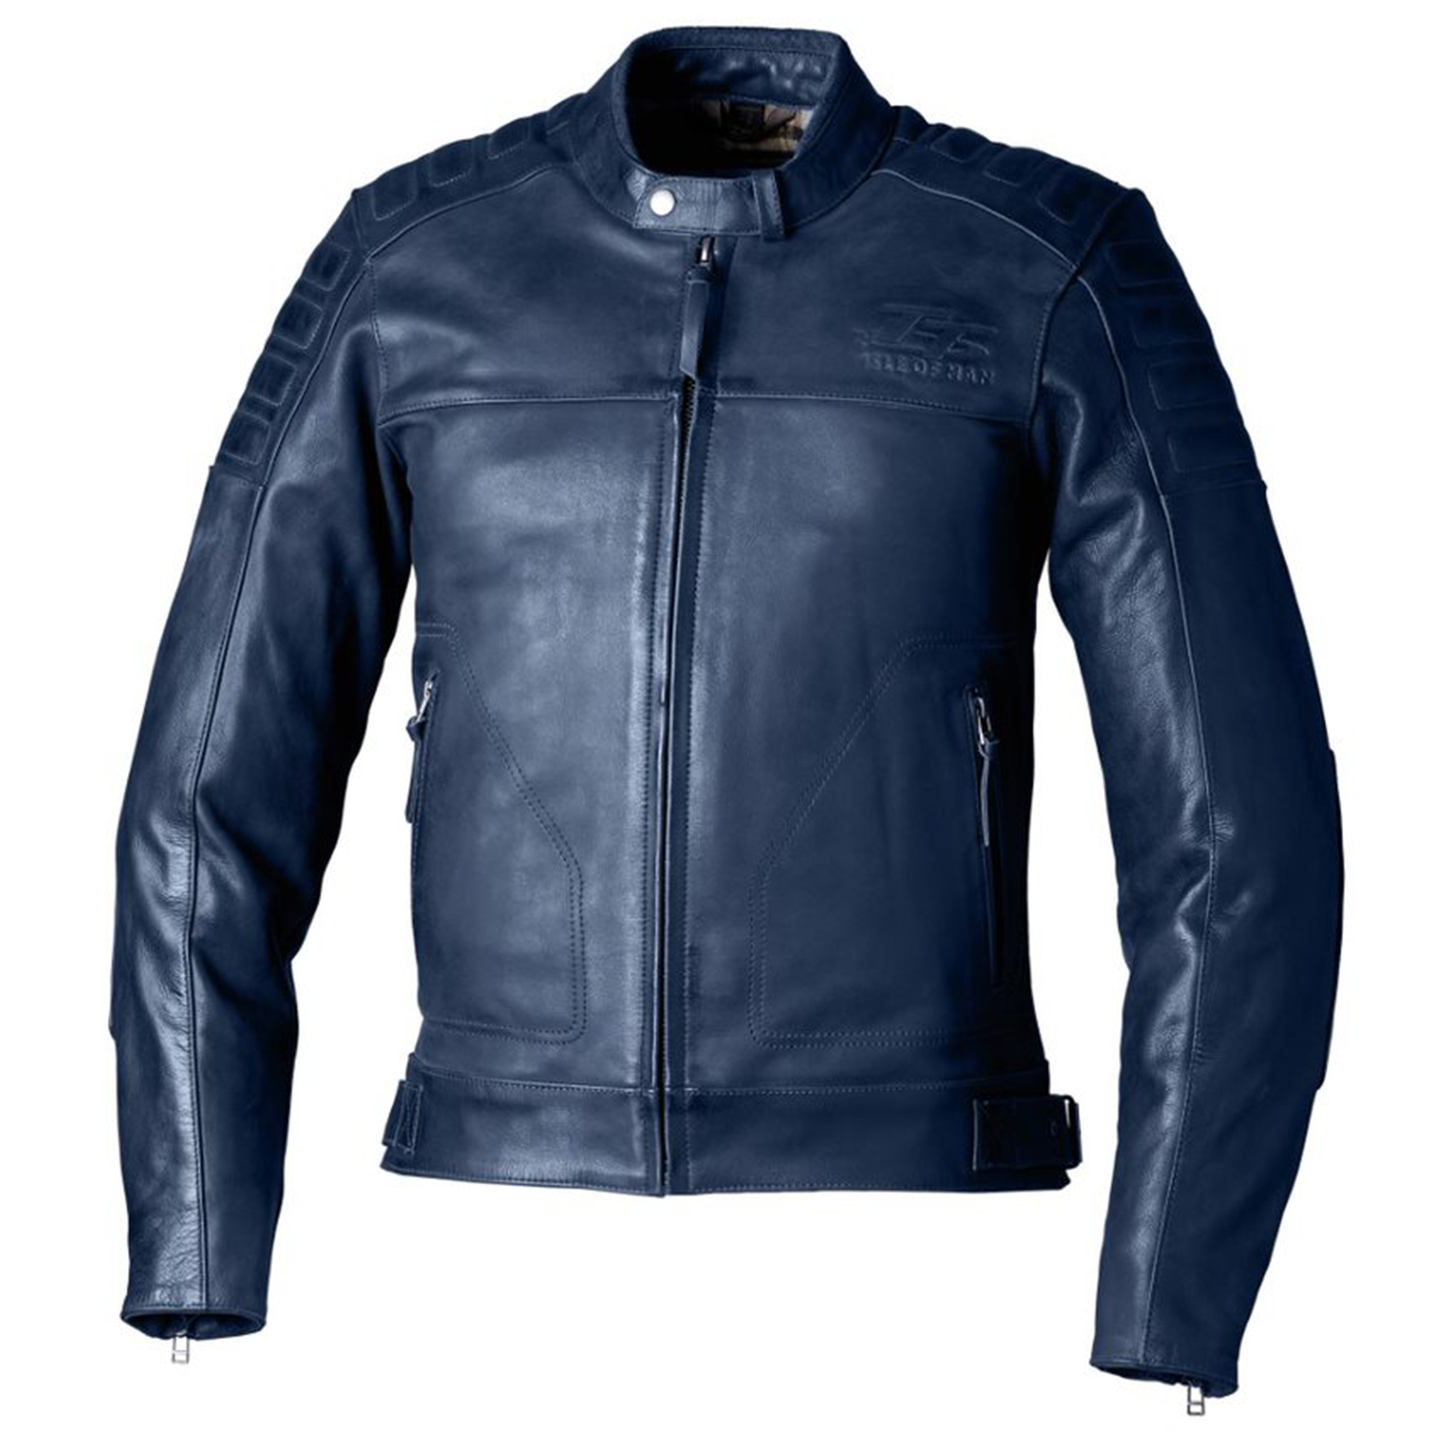 RST IOM TT Brandish 2 (CE) Leather Jacket - Petrol